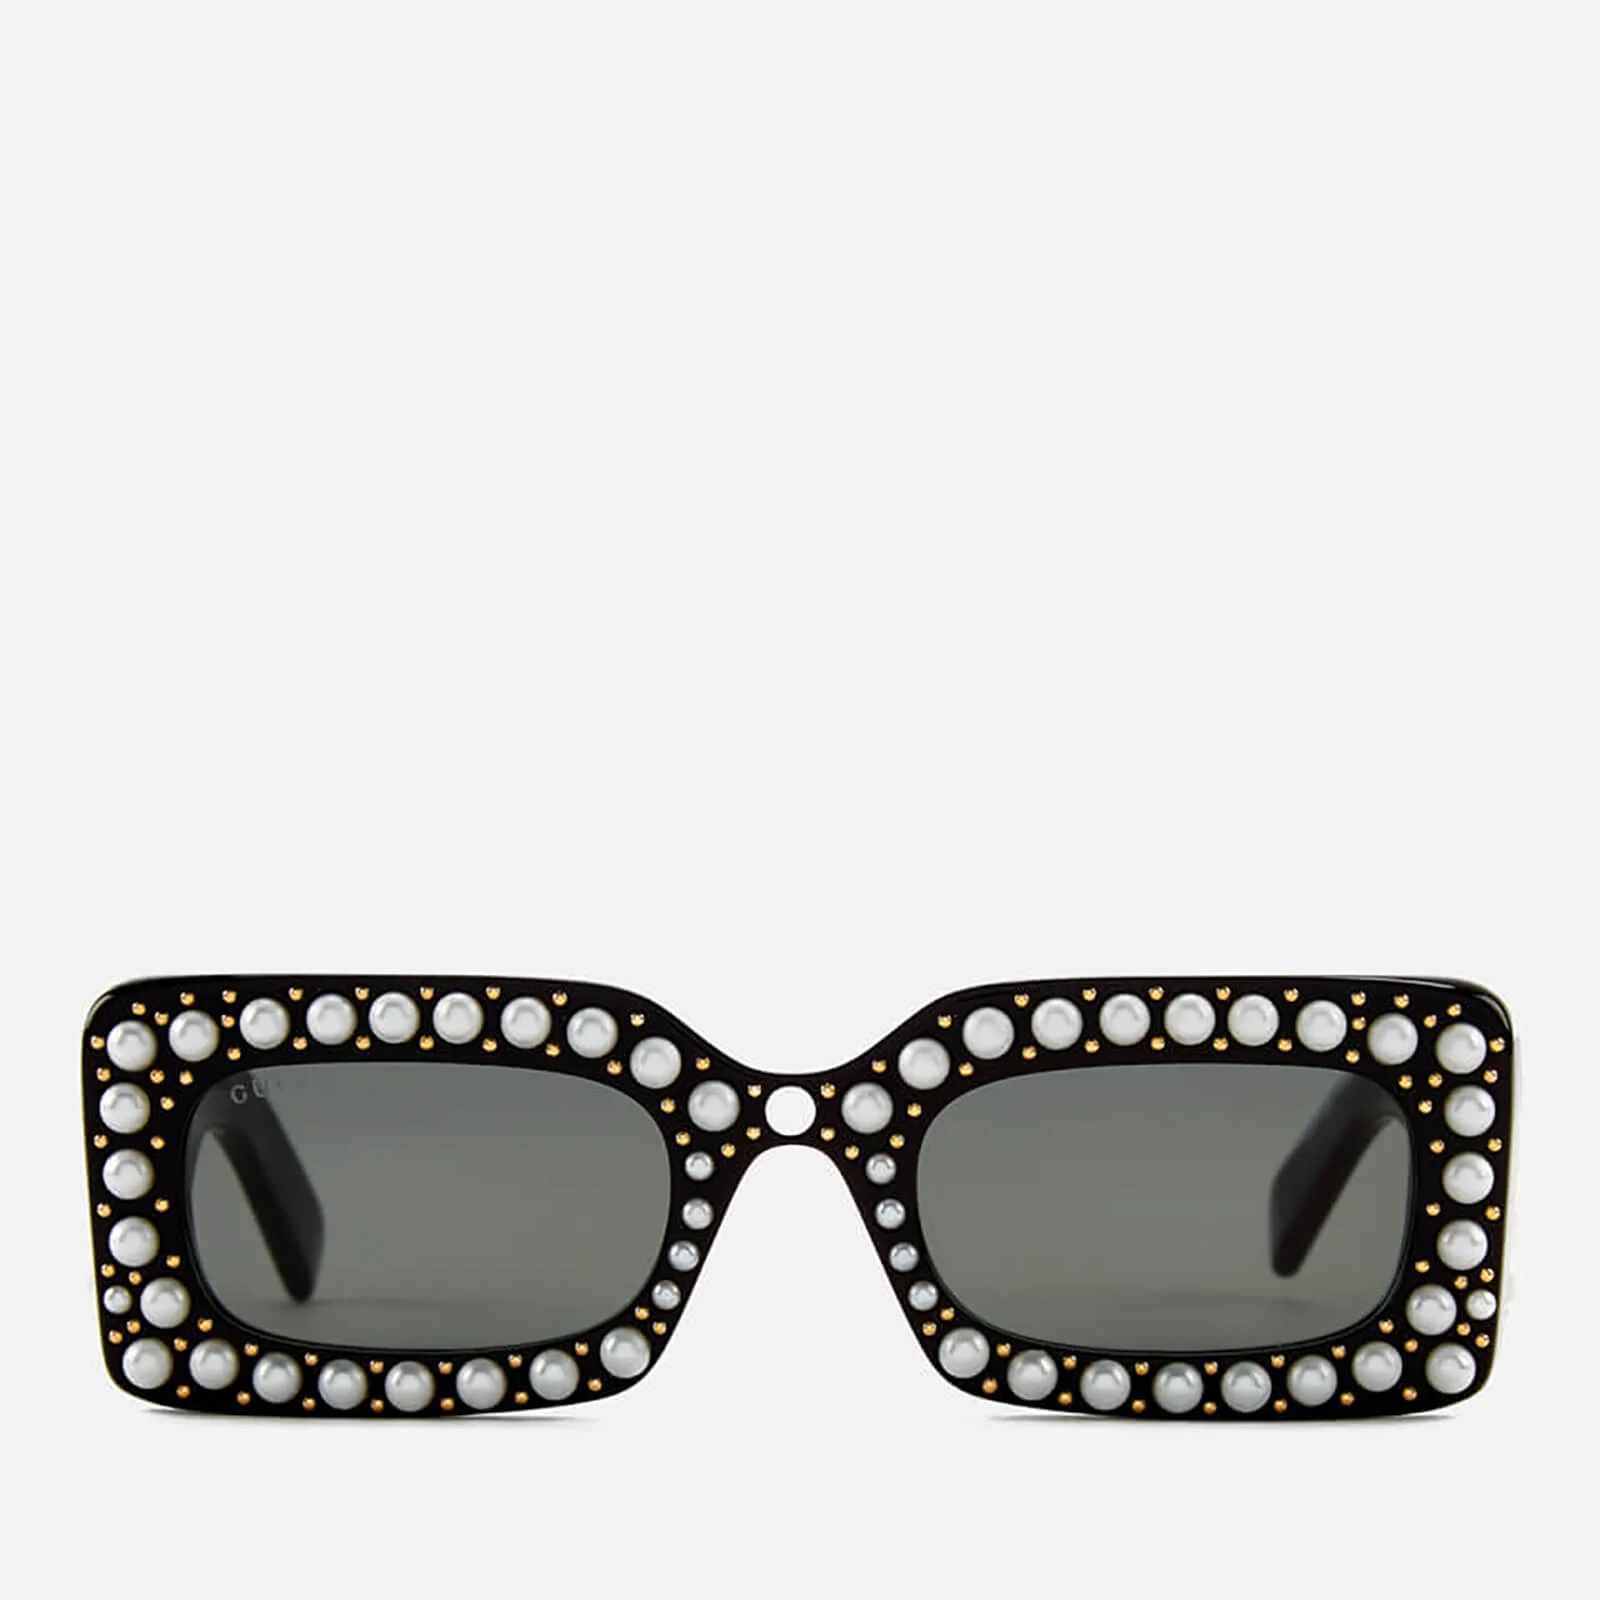 Gucci Women's Pearl Square Sunglasses - Black/Grey Image 1